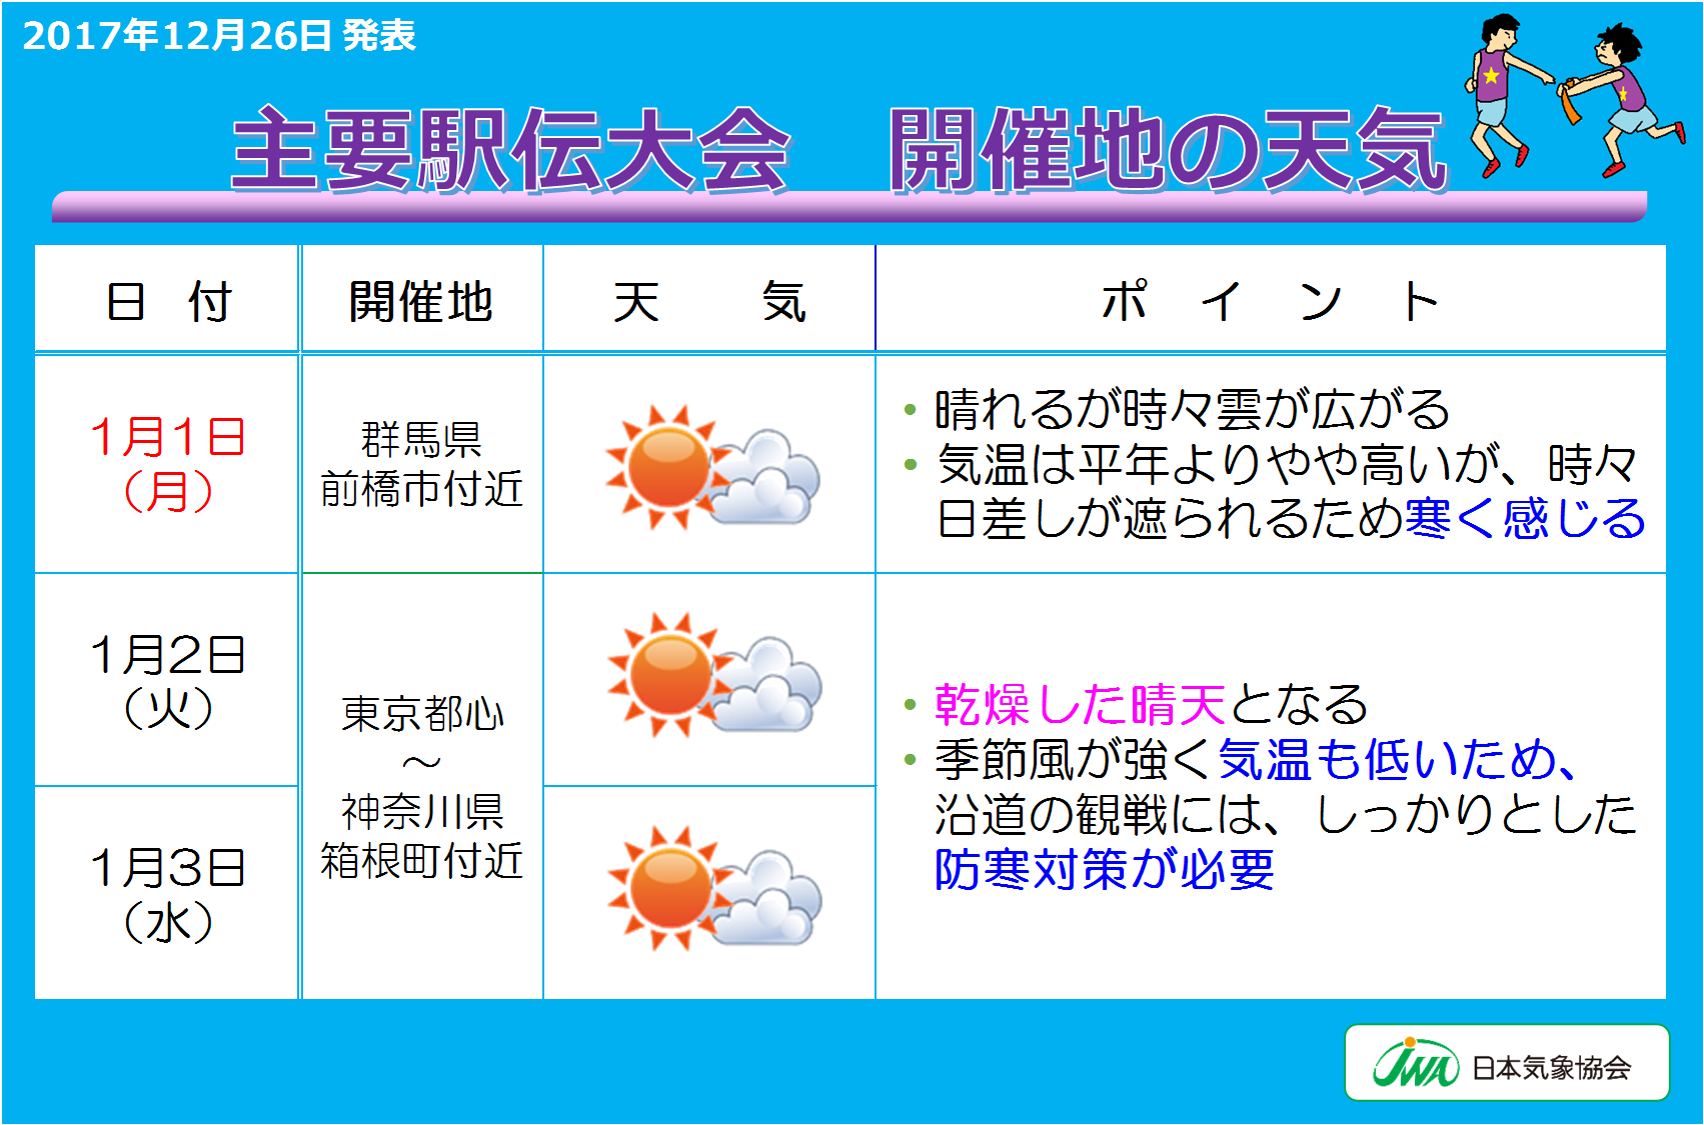 日本気象協会 年末年始の天気を発表 年明けから冬型の気圧配置が強まり日本海側で大雪の恐れ Jwaニュース 日本気象協会